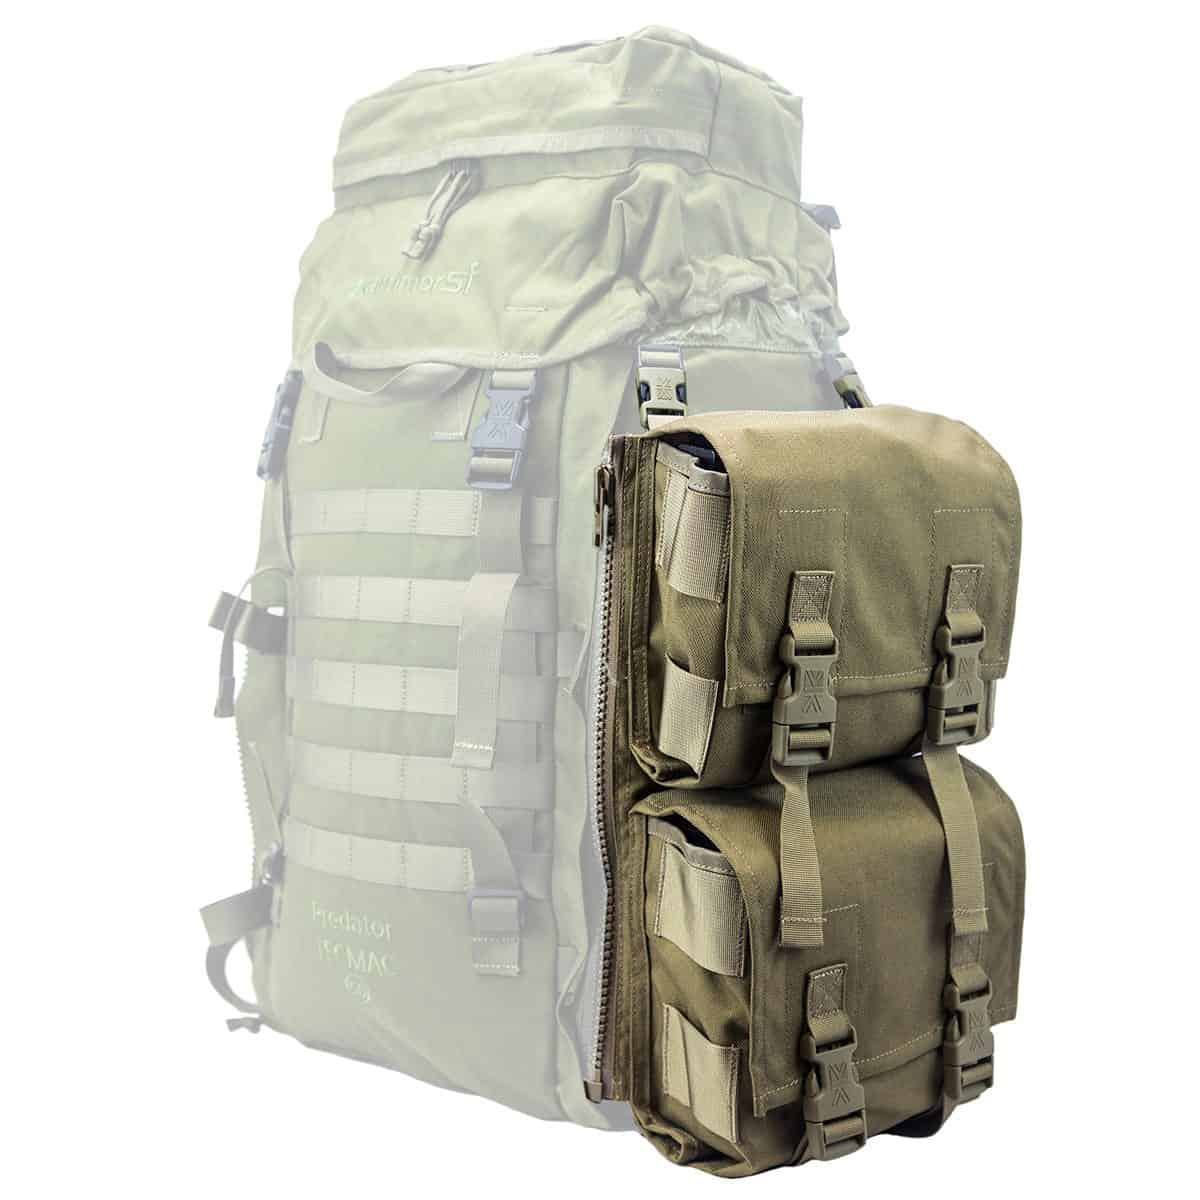 Stranska vojaška torba Predator Double Omni PLCE je vrhunski dodatek za vaš PLCE vojaški nahrbtnik. Izdelana je iz visokokakovostnega materiala. Povečajte vašo zmogljivost in organiziranost z izjemno prostornim dizajnom. Kupite zdaj in izboljšajte svoje vojaško opremljanje!